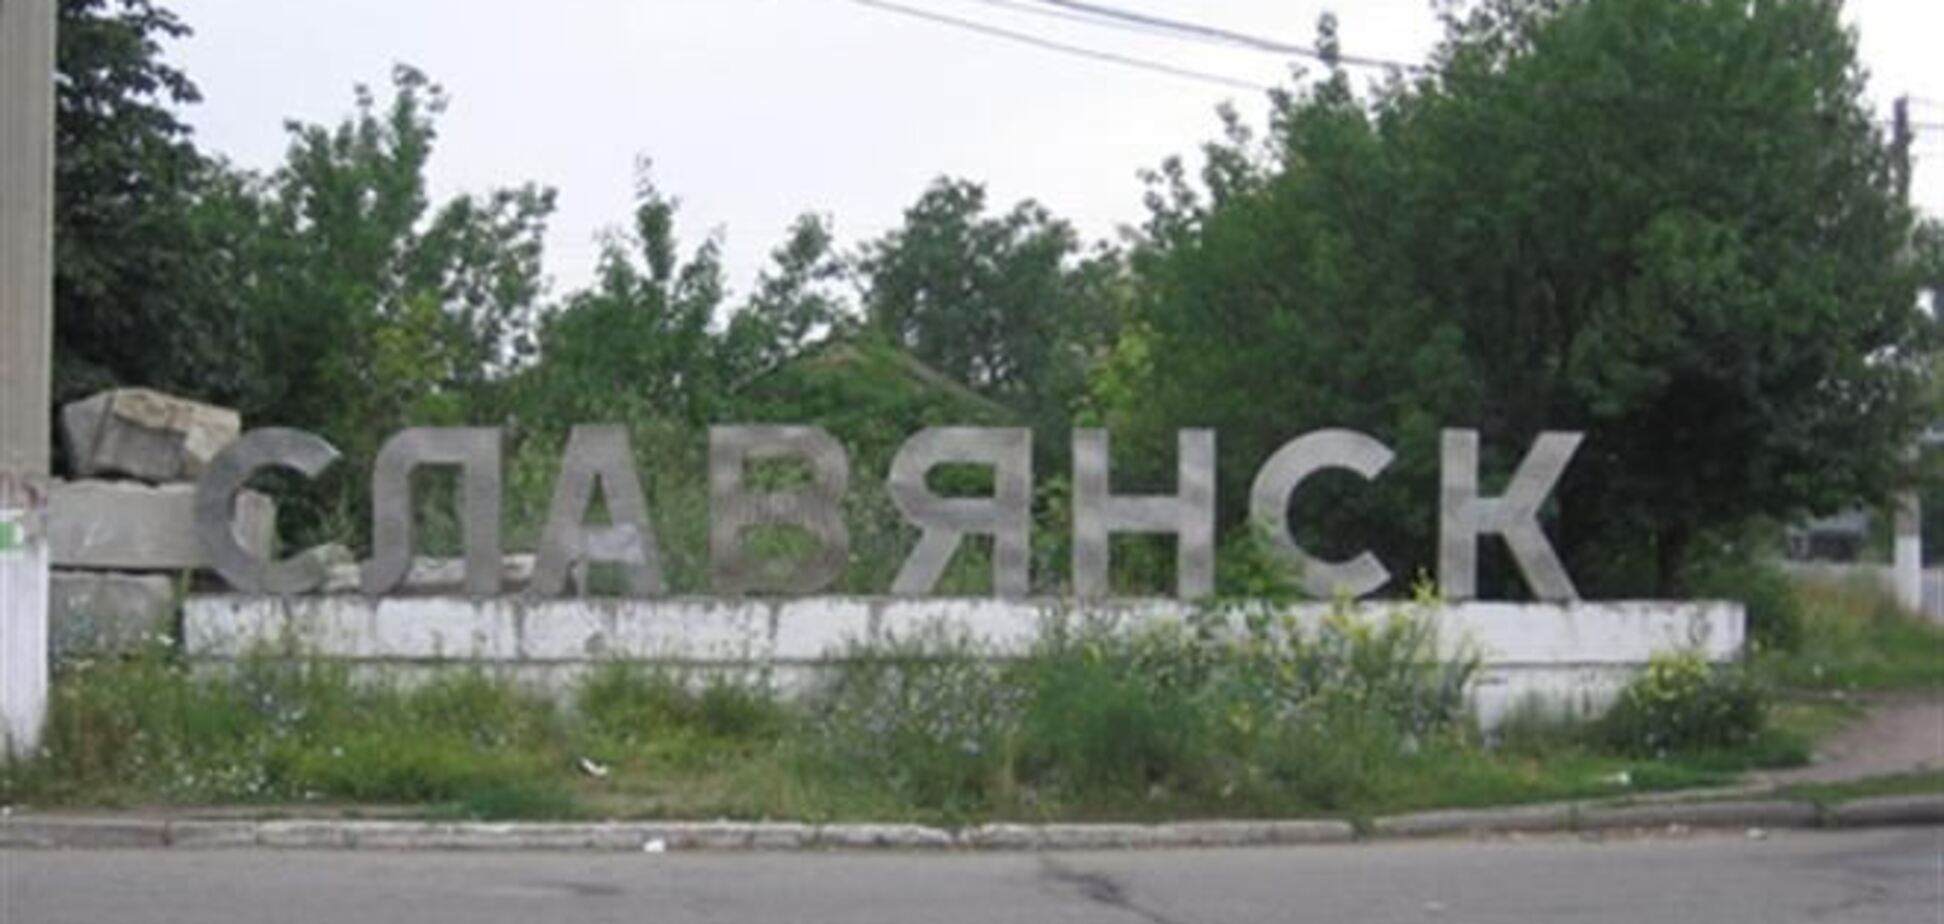 Генпрокуратура и международные организации расследуют происшествие в Славянске